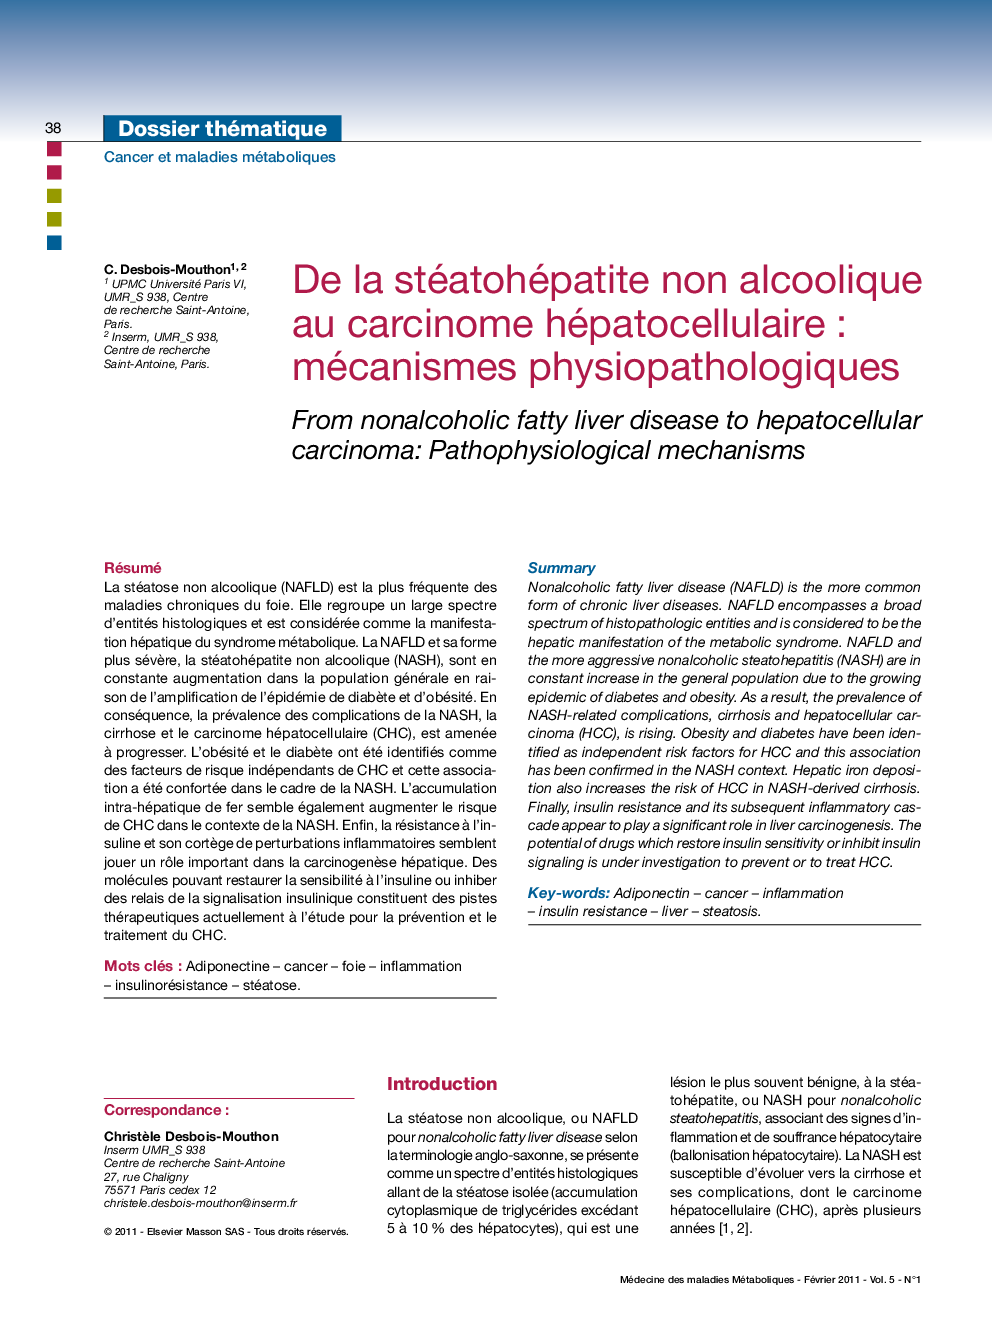 De la stéatohépatite non alcoolique au carcinome hépatocellulaireÂ : mécanismes physiopathologiques